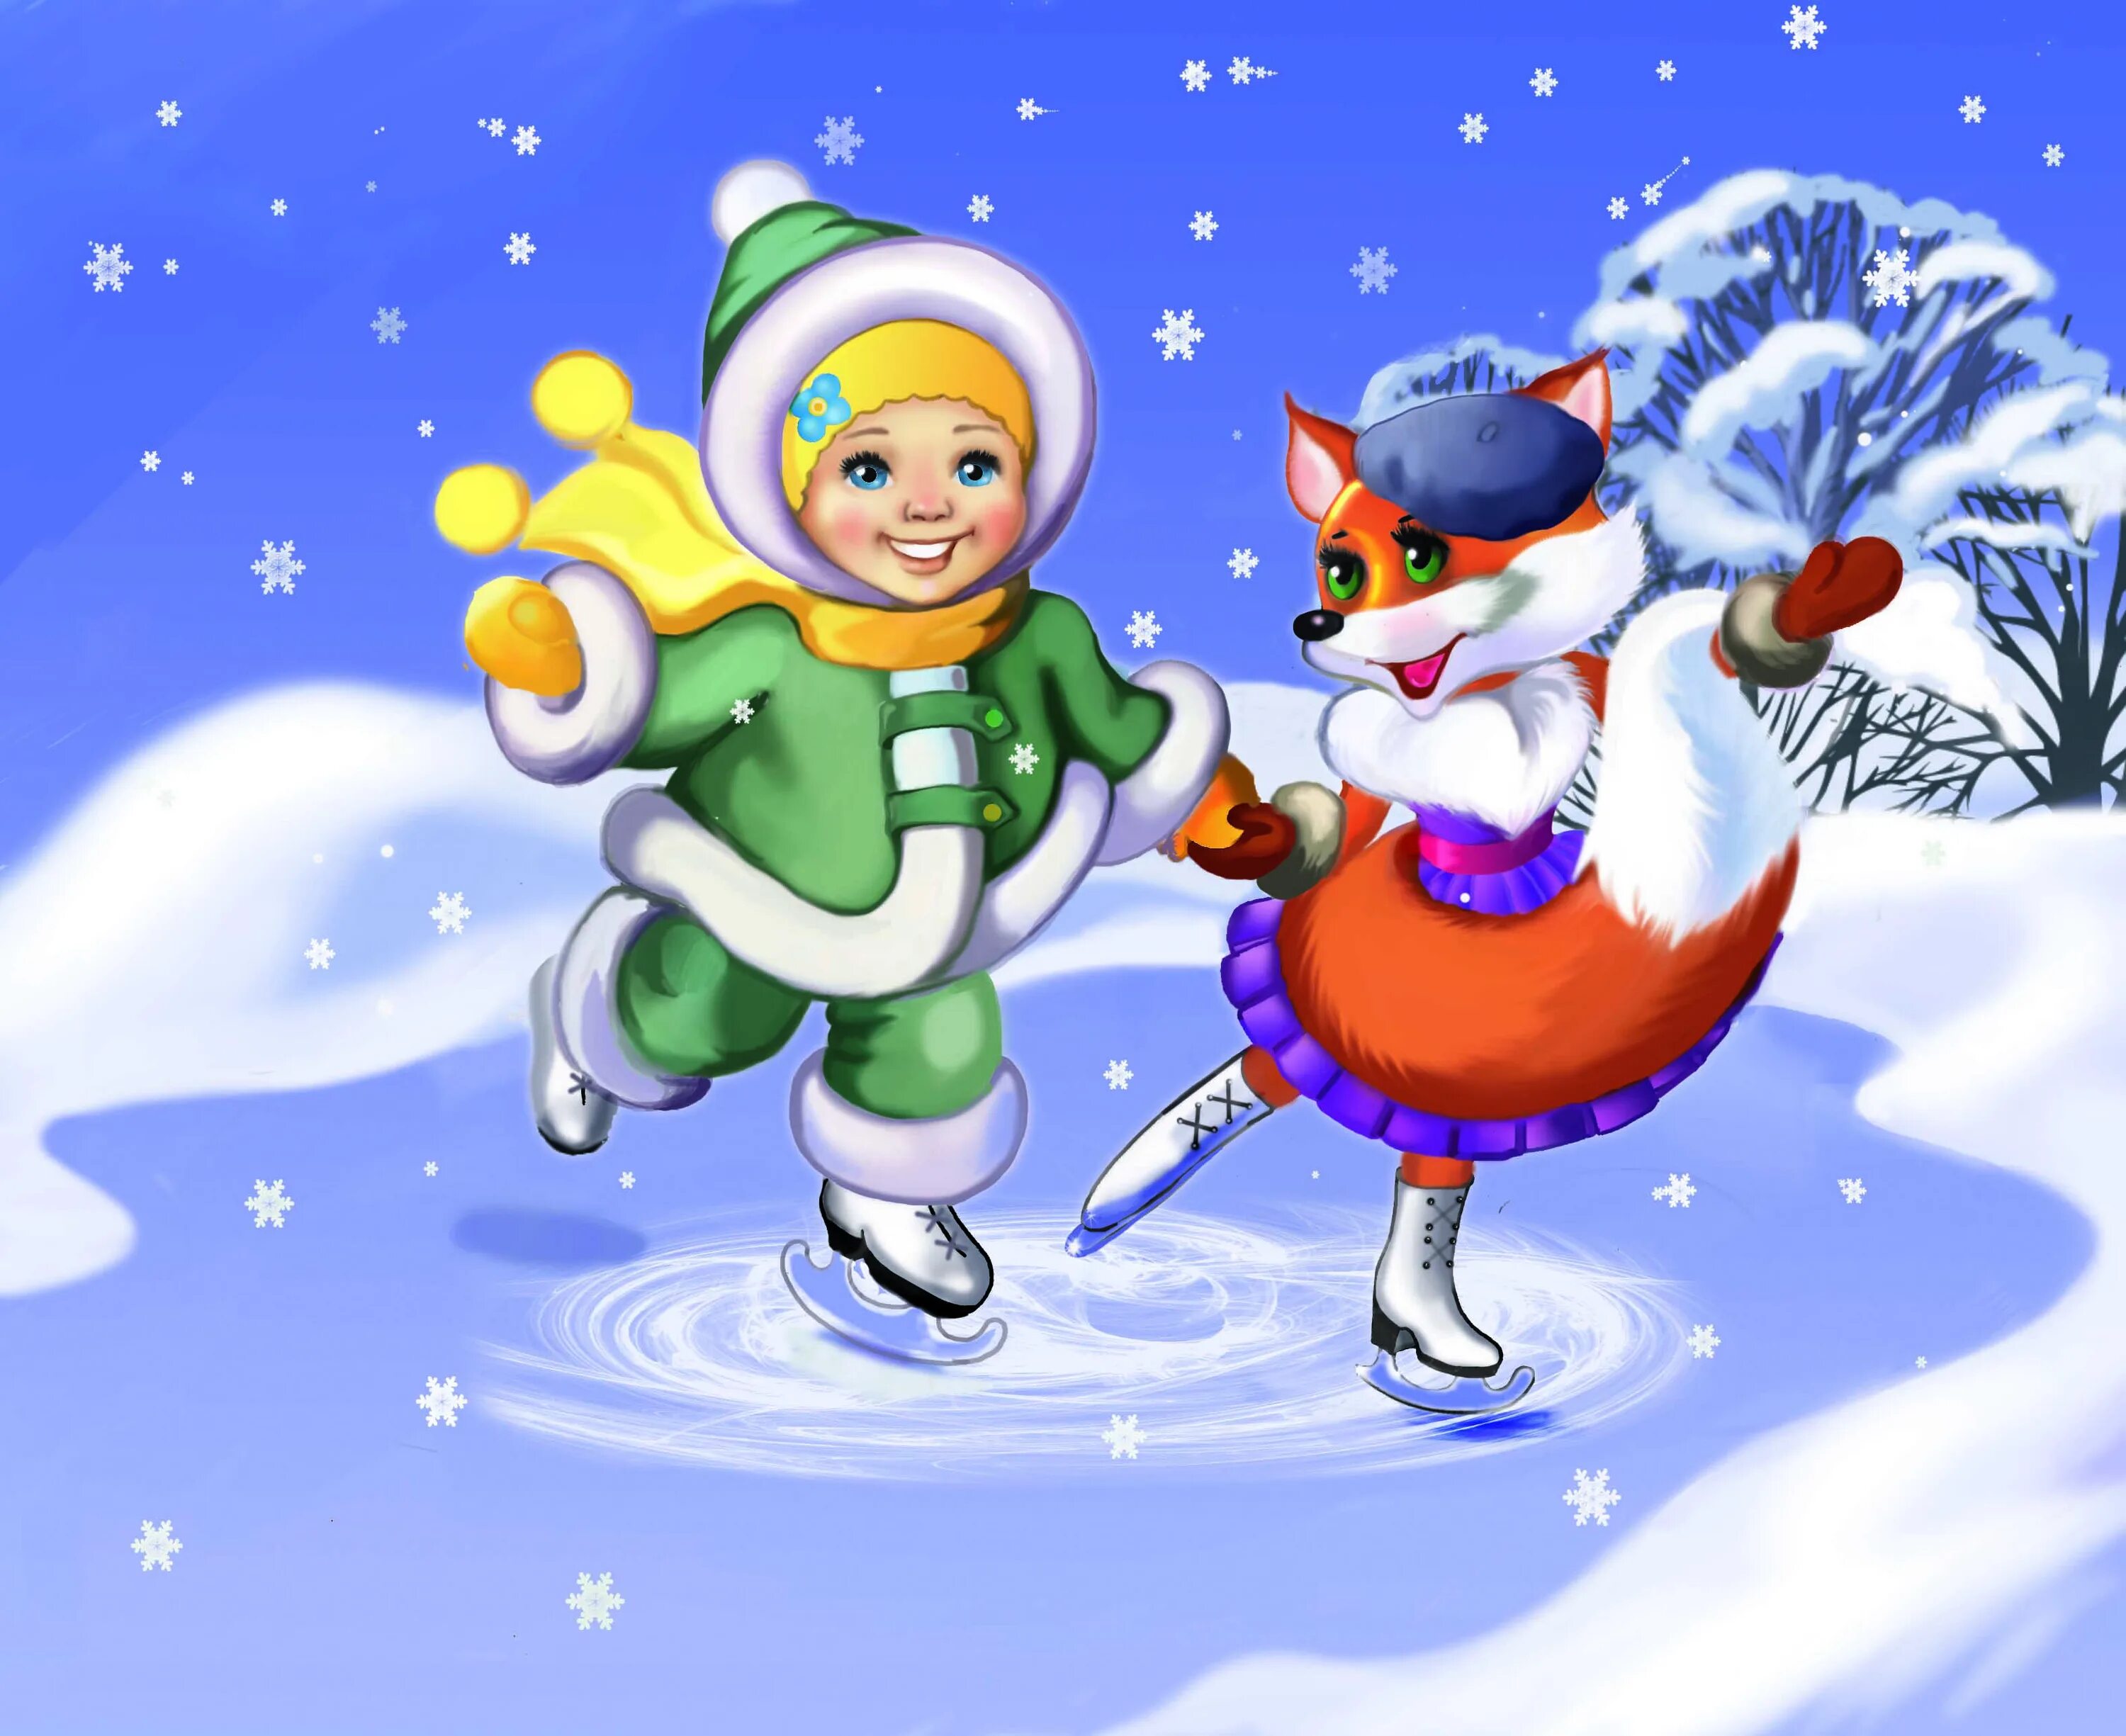 Веселые новогодние песни. Иллюстрации к детским песням о зиме для детей. Иллюстрации к новогодним песням. Музыкальный мультфильм про зиму. Иллюстрация к песне про зиму для детей.